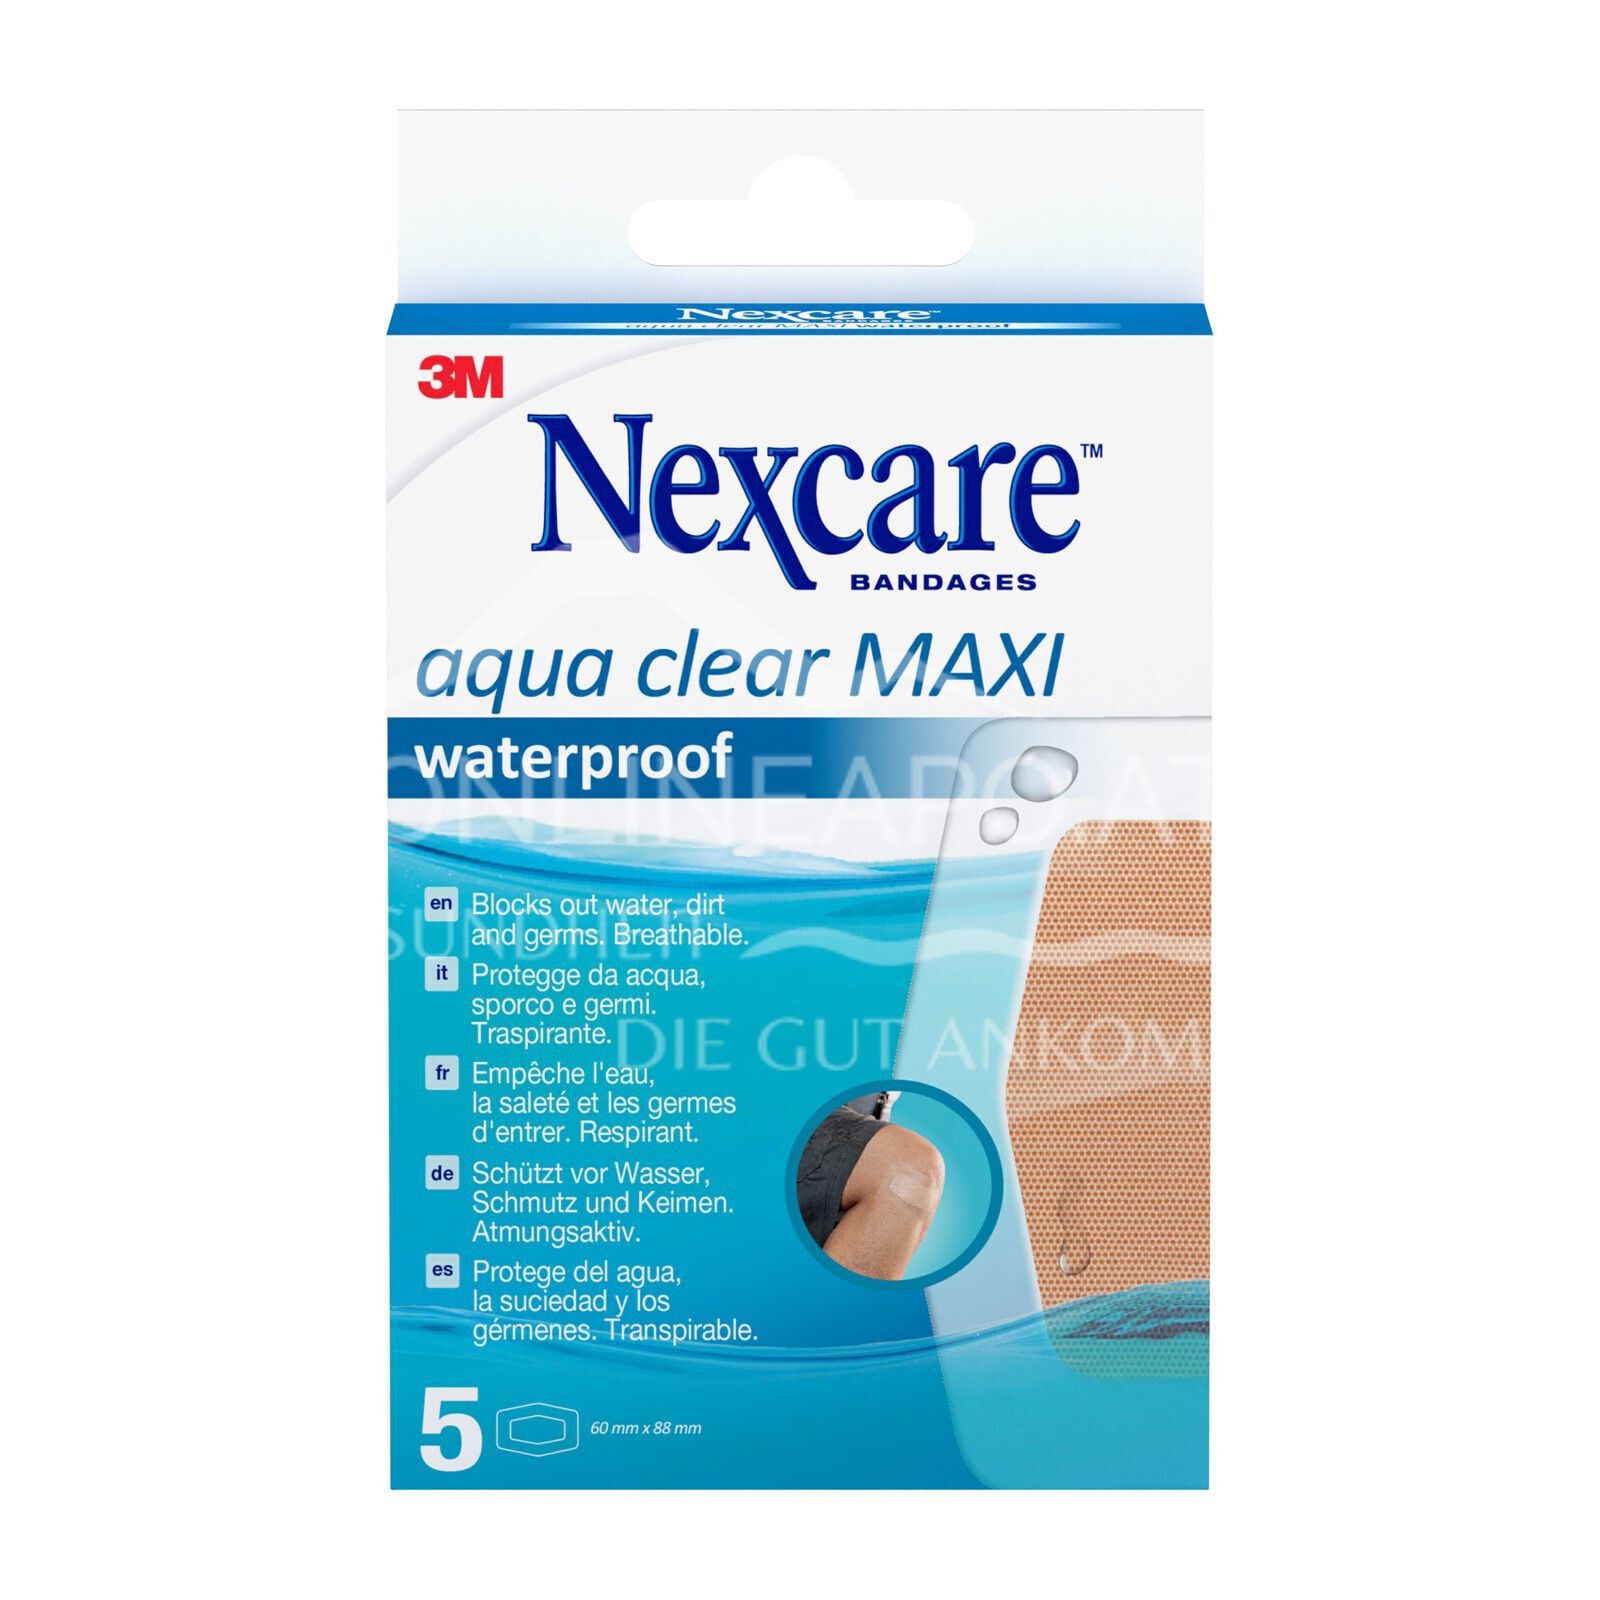 3M Nexcare™ Aqua Clear MAXI Waterproof Pflaster, 60 x 88 mm